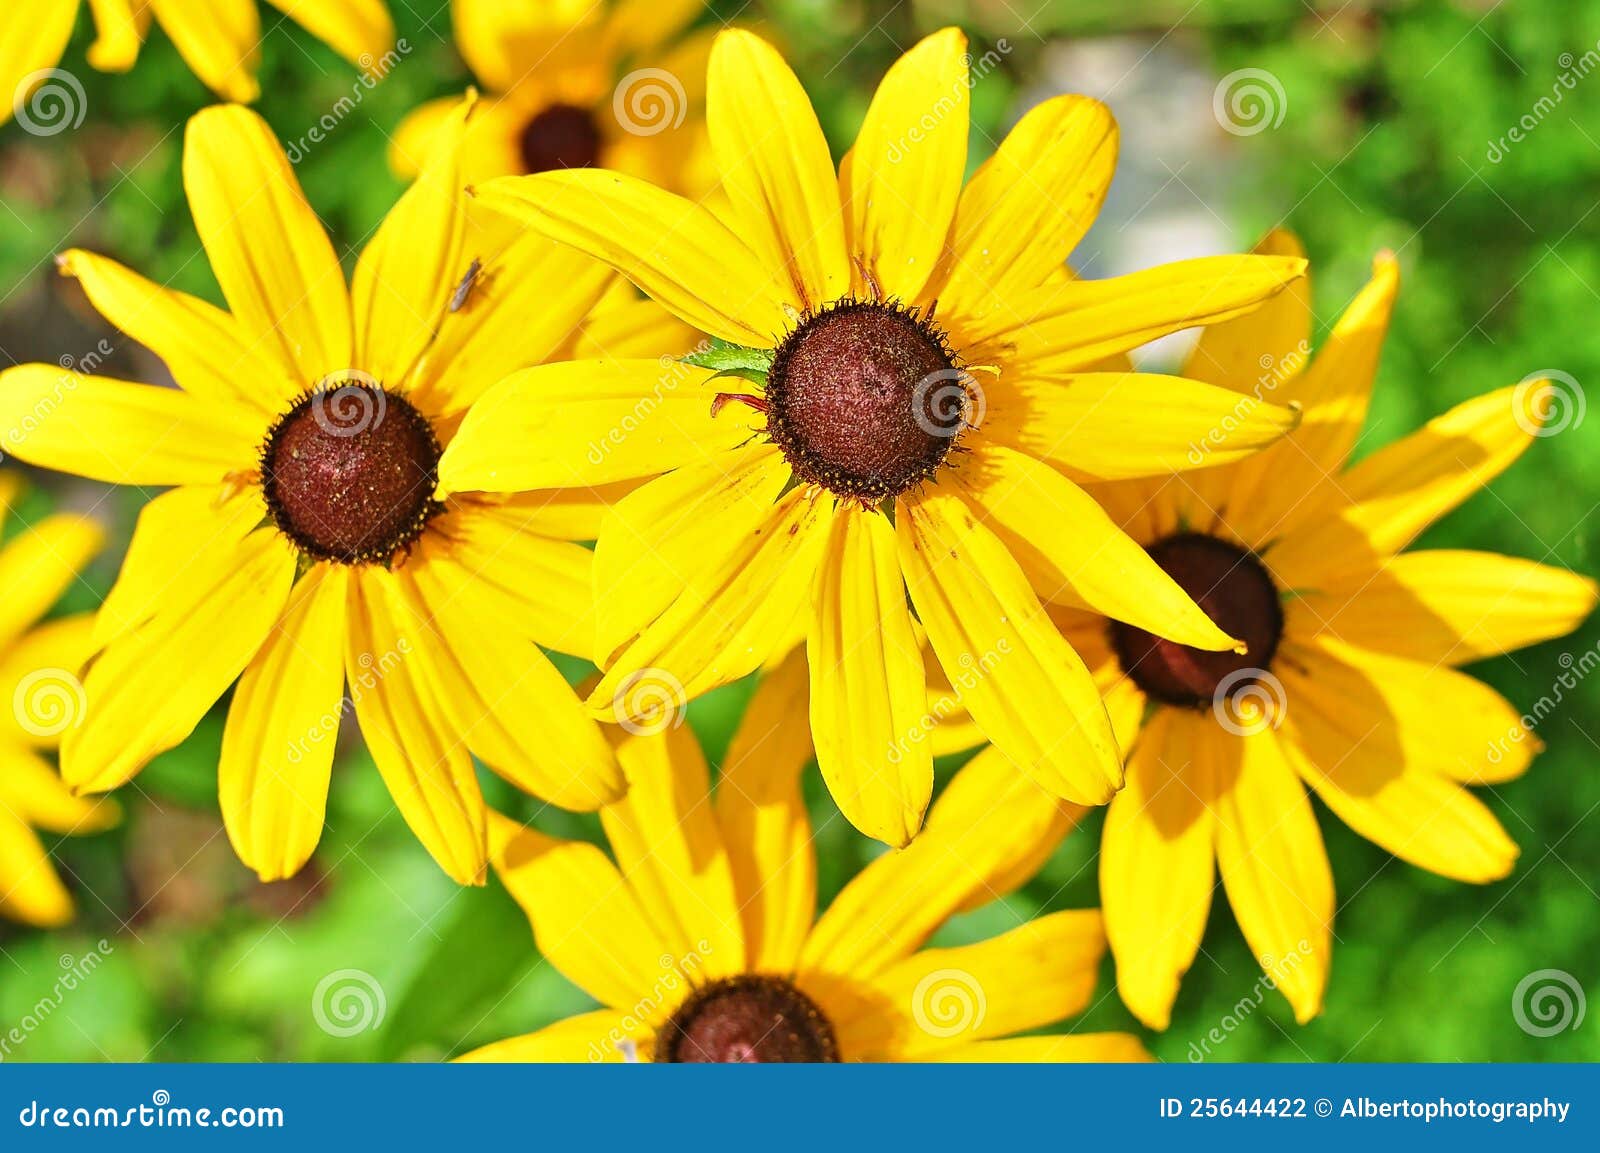 Conserveermiddel Raad eens Validatie Gele bloemen stock foto. Image of bloemblaadjes, bloei - 25644422